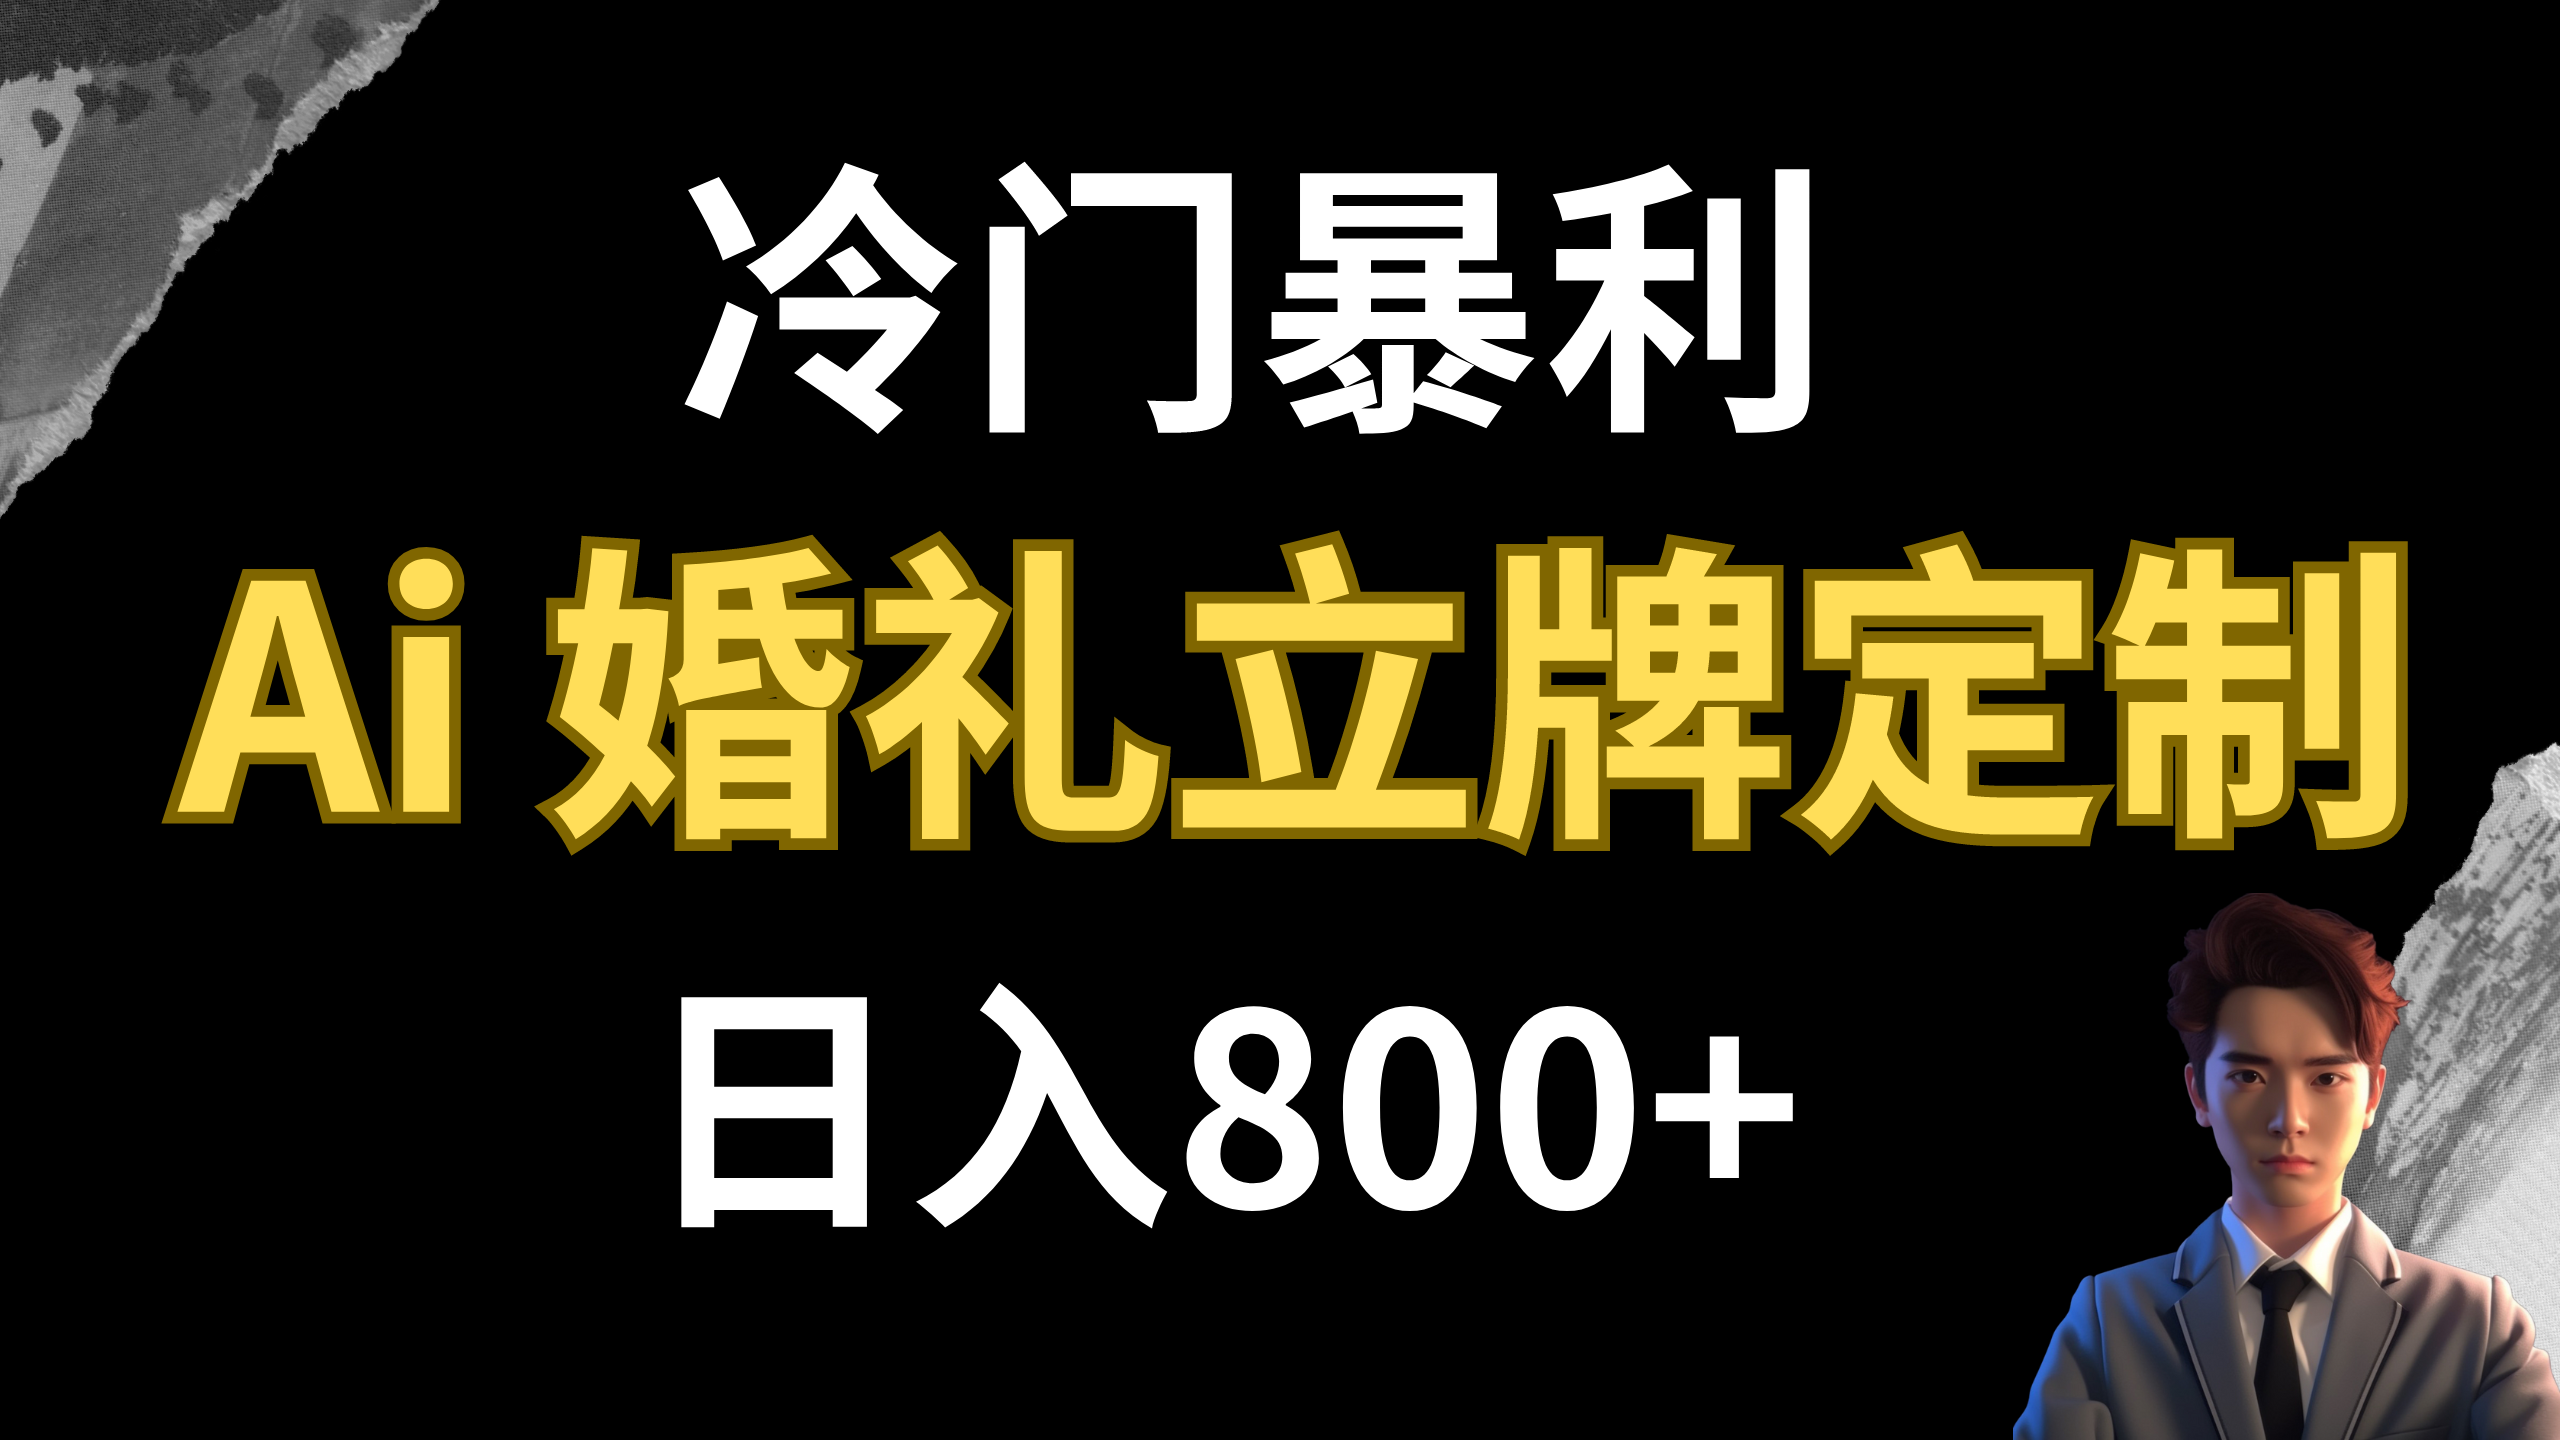 冷门暴利项目 AI婚礼立牌定制 日入800+-臭虾米项目网